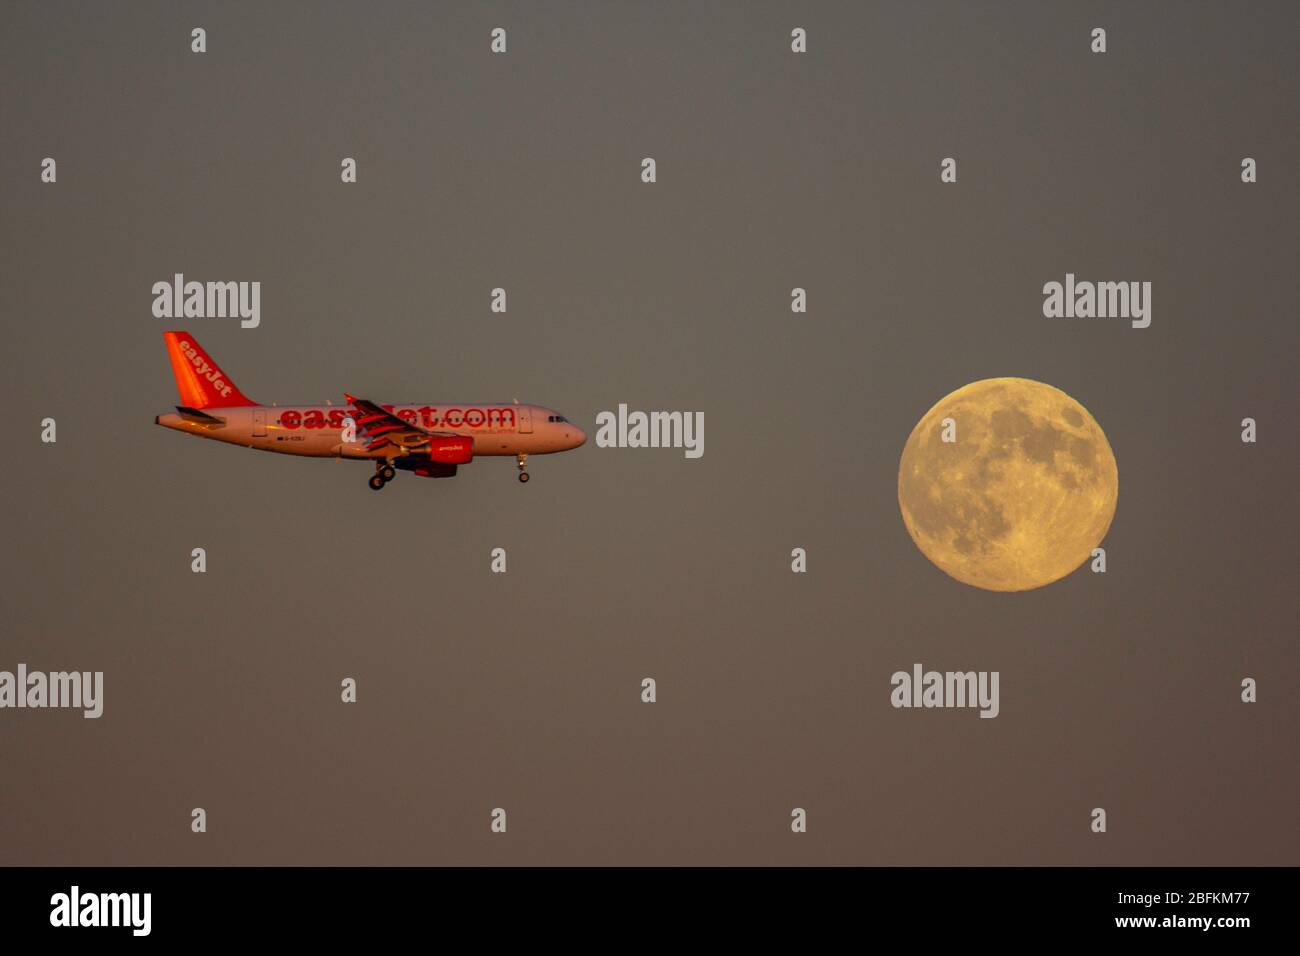 Avion volant devant la lune Banque D'Images